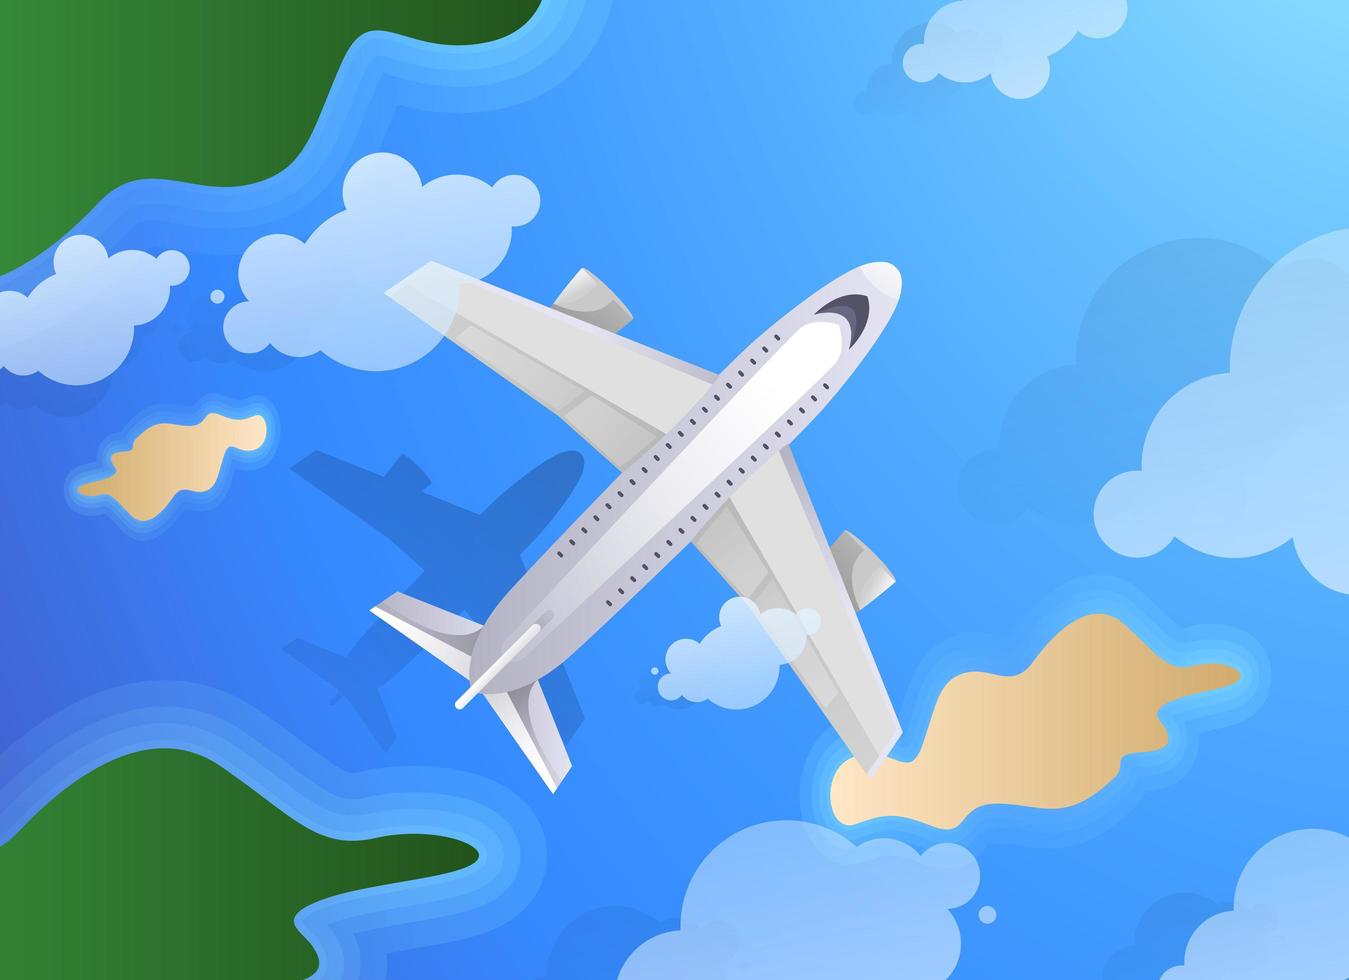 vue de dessus d'un avion ou d'un avion à réaction survolant l'île et l'océan. thème de voyage d'été ou d'agence de tourisme vecteur